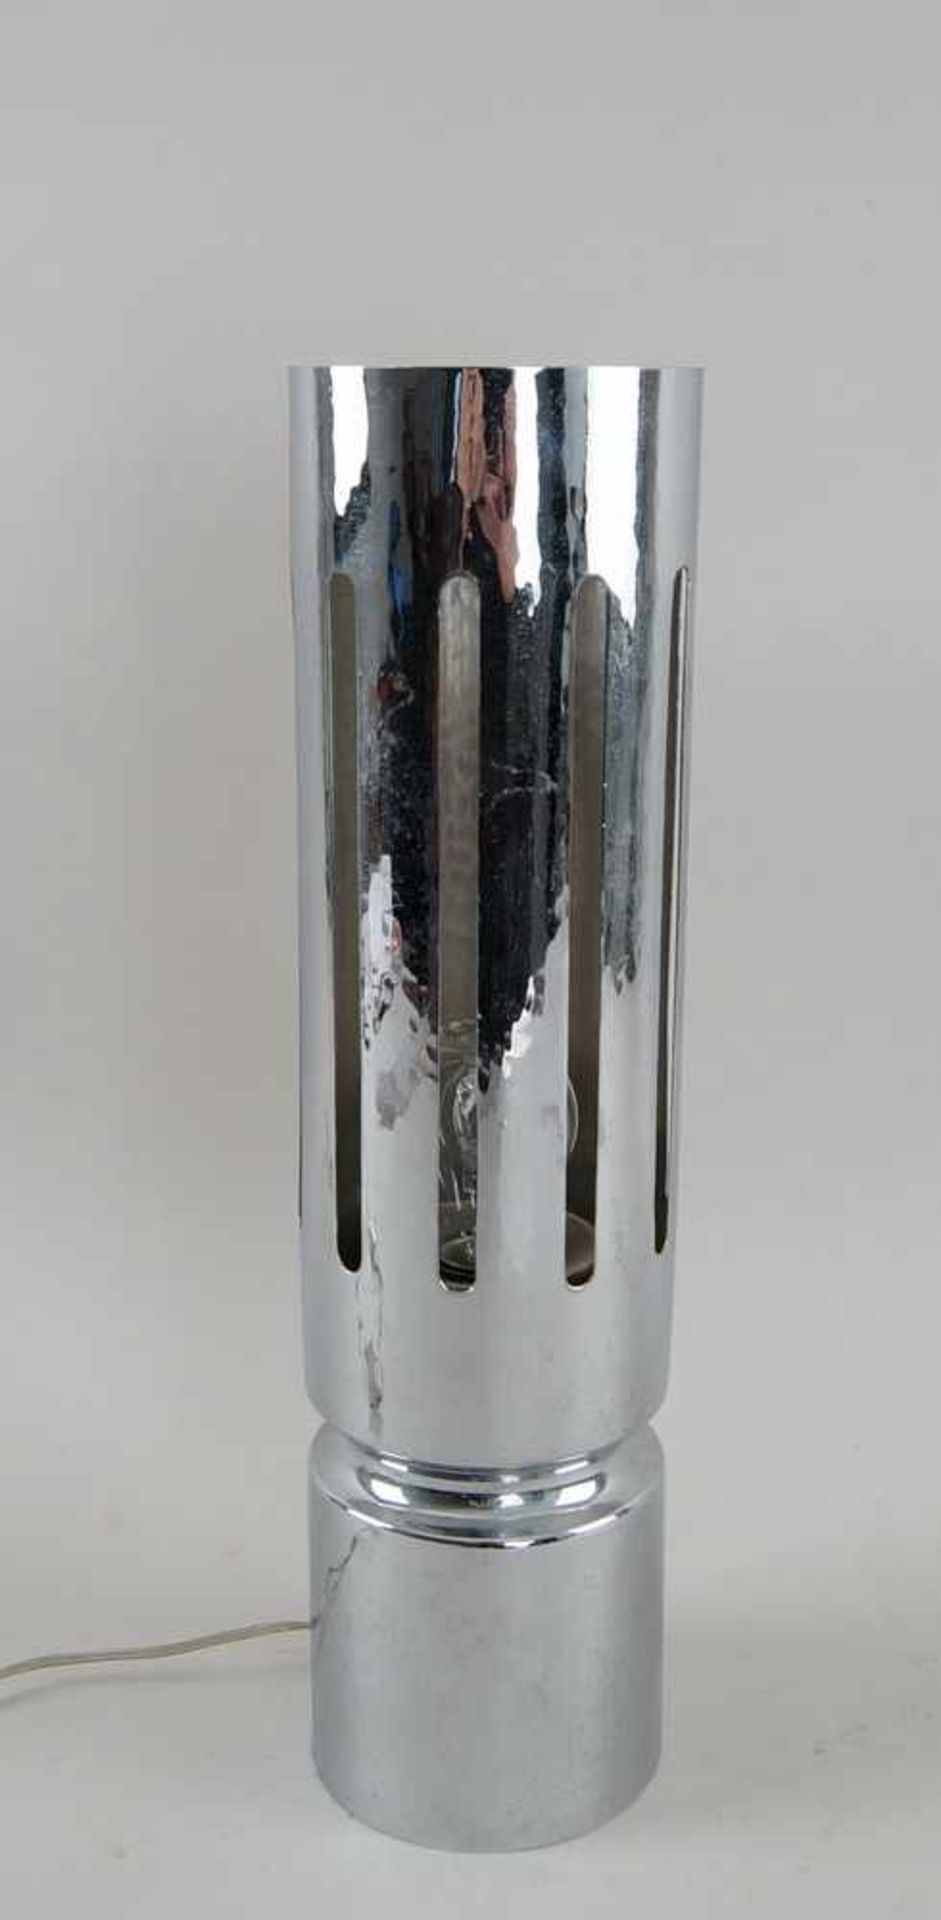 Tischlampe, 70er Jahre, verchromt, elektrifiziert, H 41 cm- - -24.00 % buyer's premium on the hammer - Bild 2 aus 4